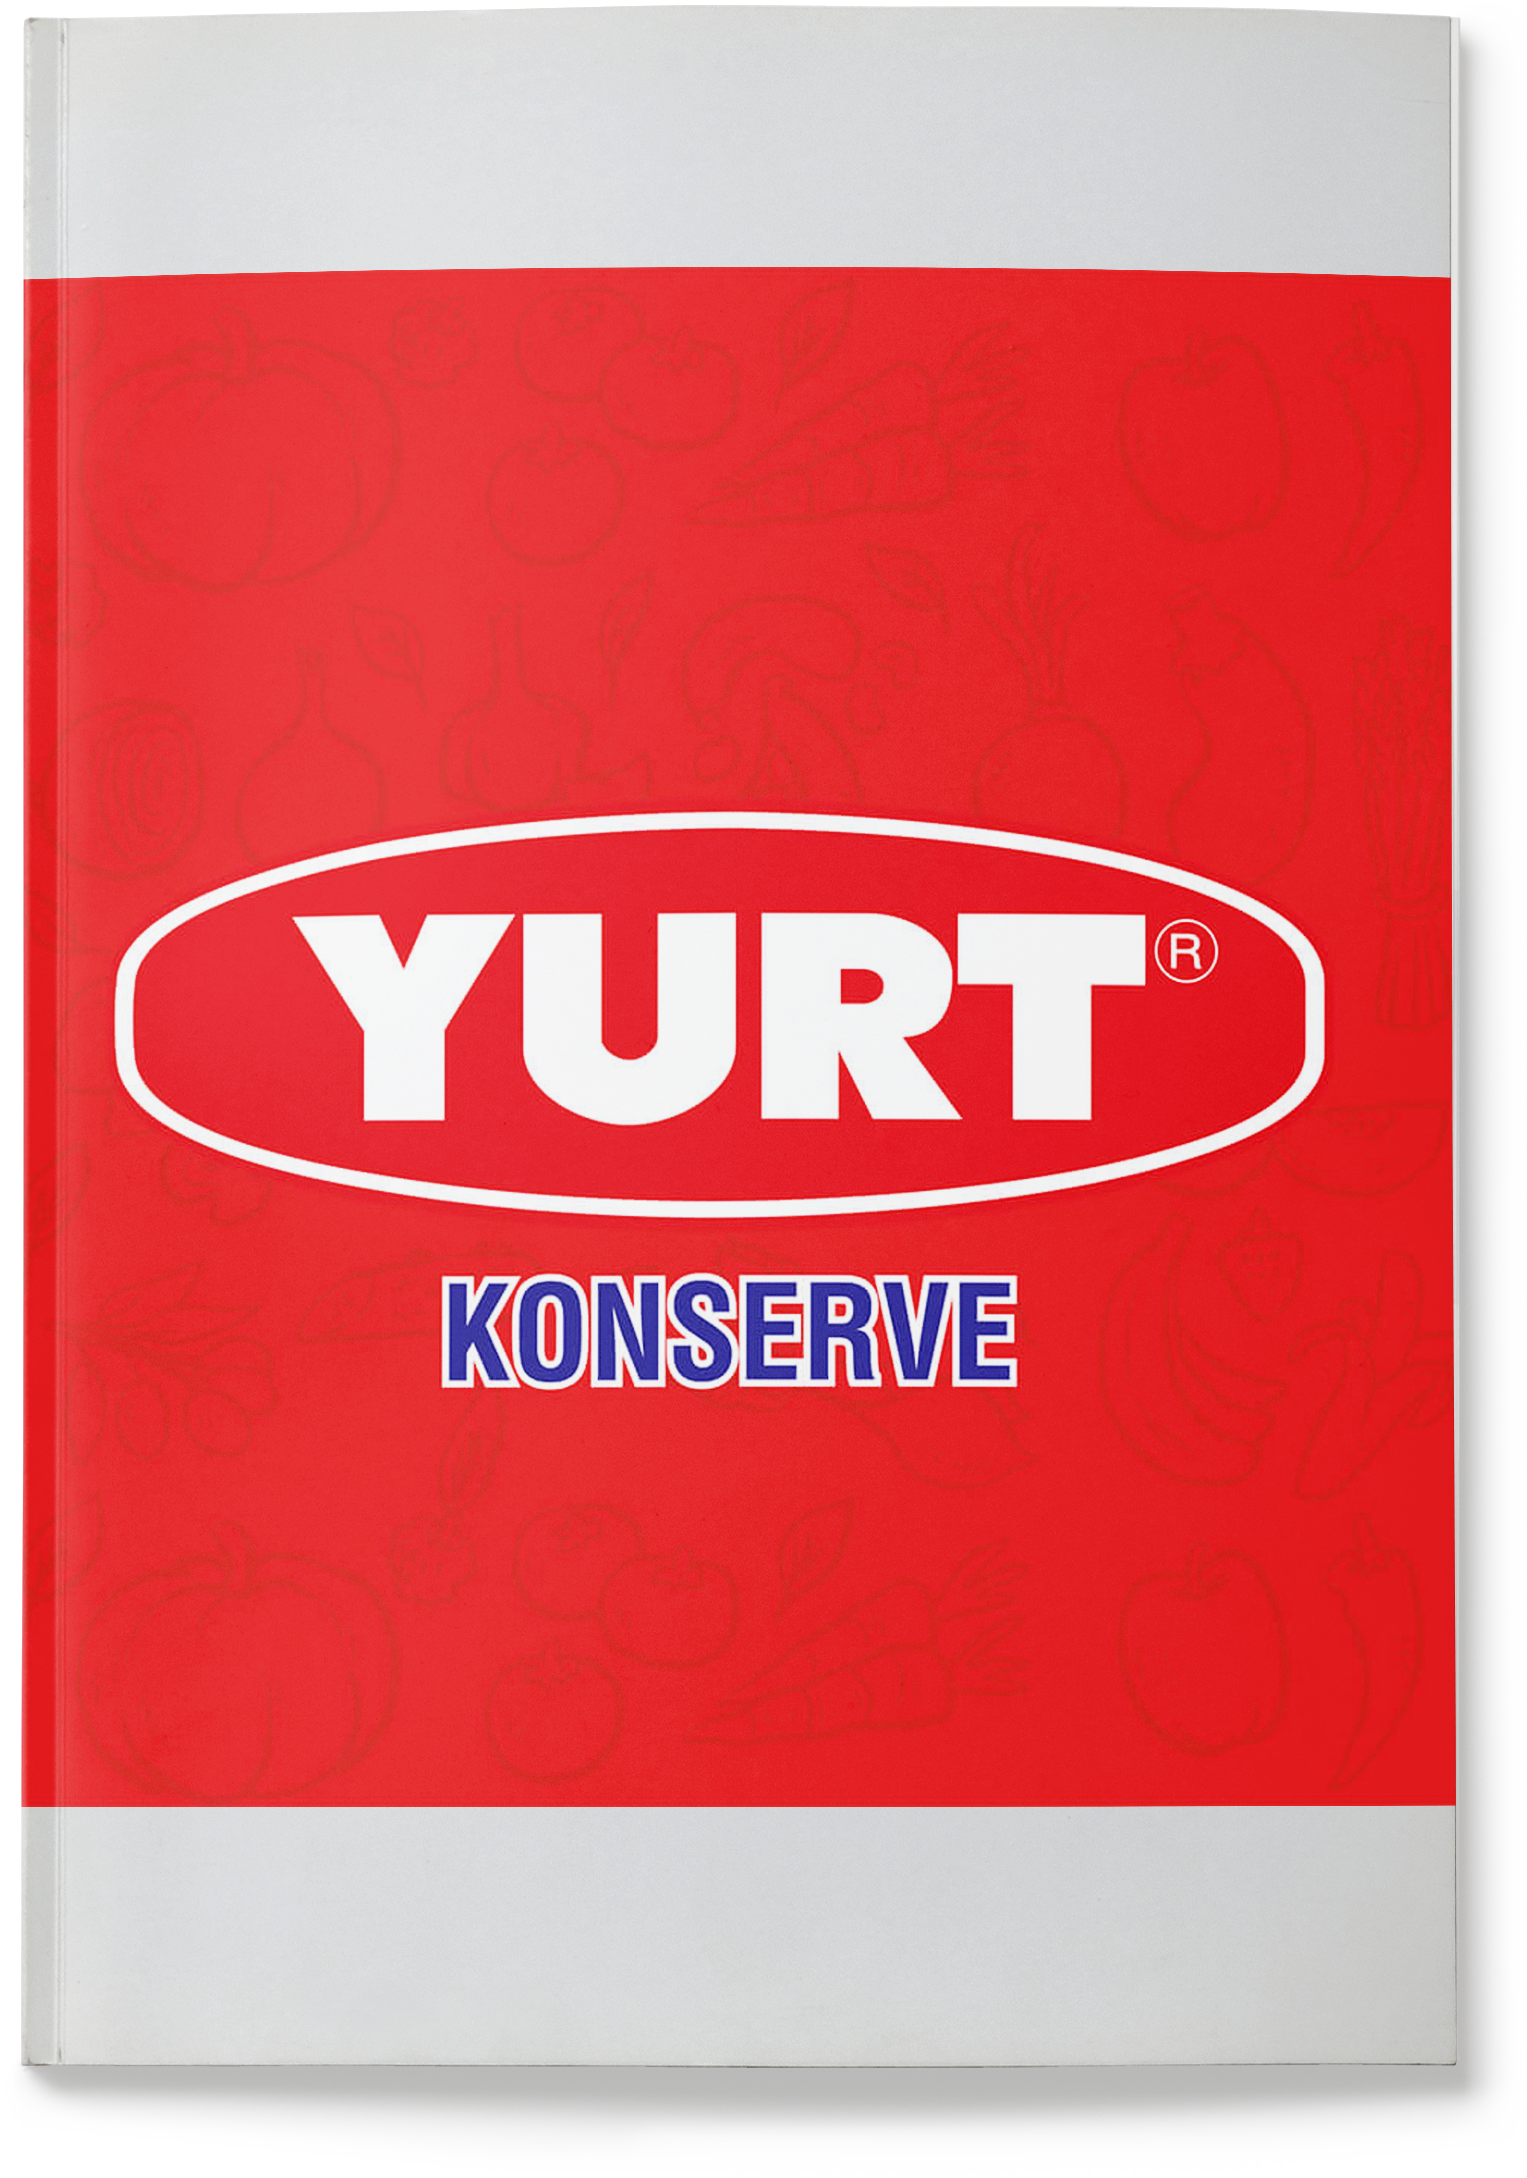 Yurt Konserve - E-Katalog